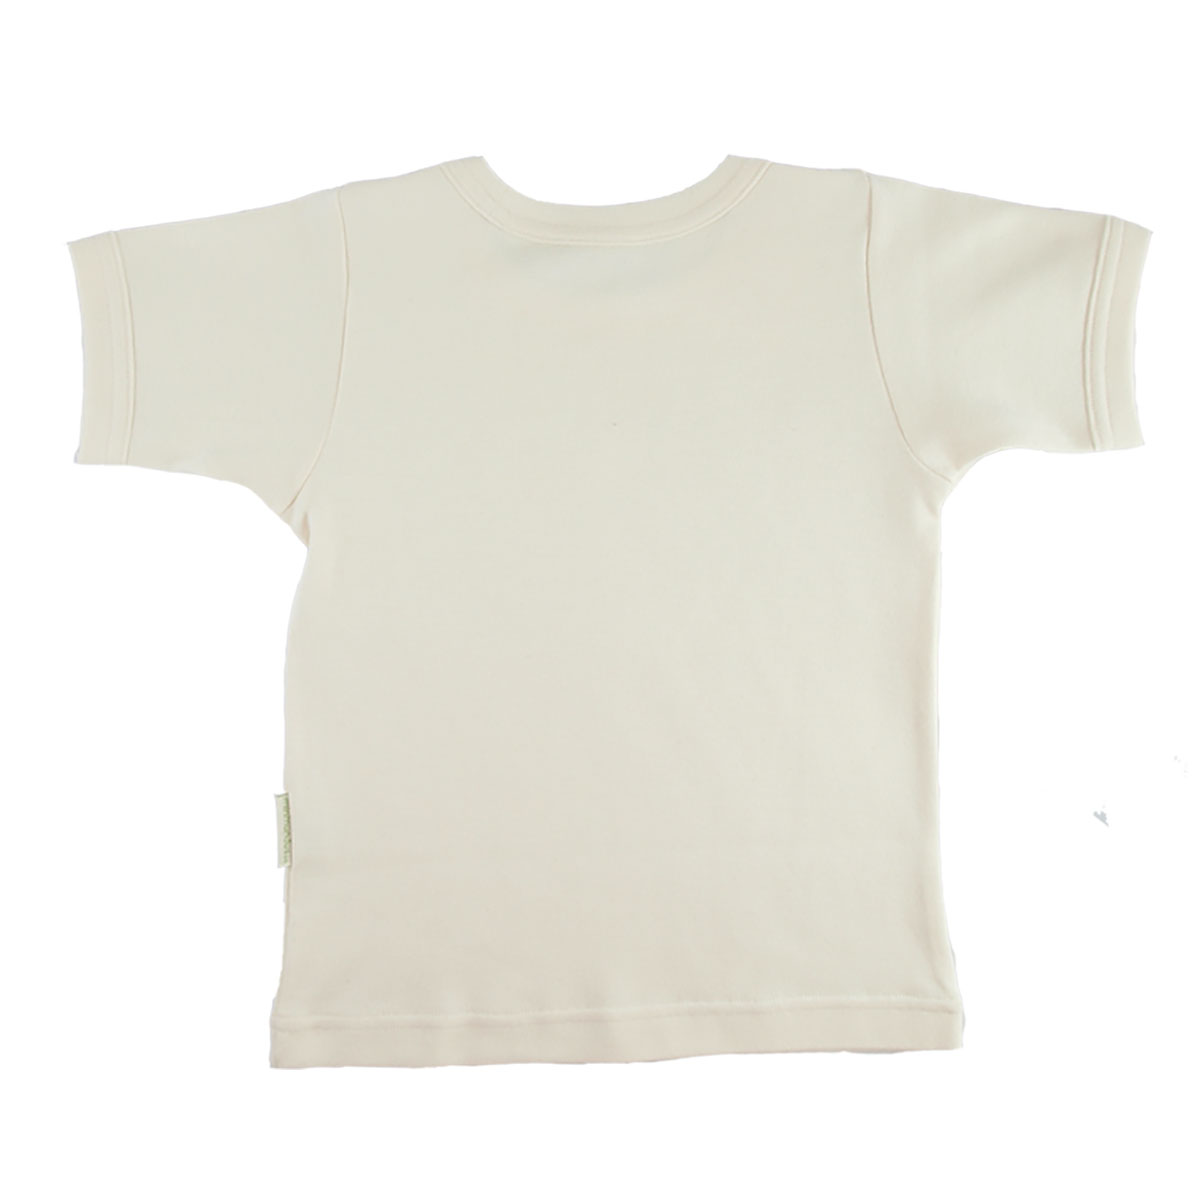 Tim&Teja t-shirt tröja med kort ärm 100% ekologisk bomull ekologiskt färgad naturvit